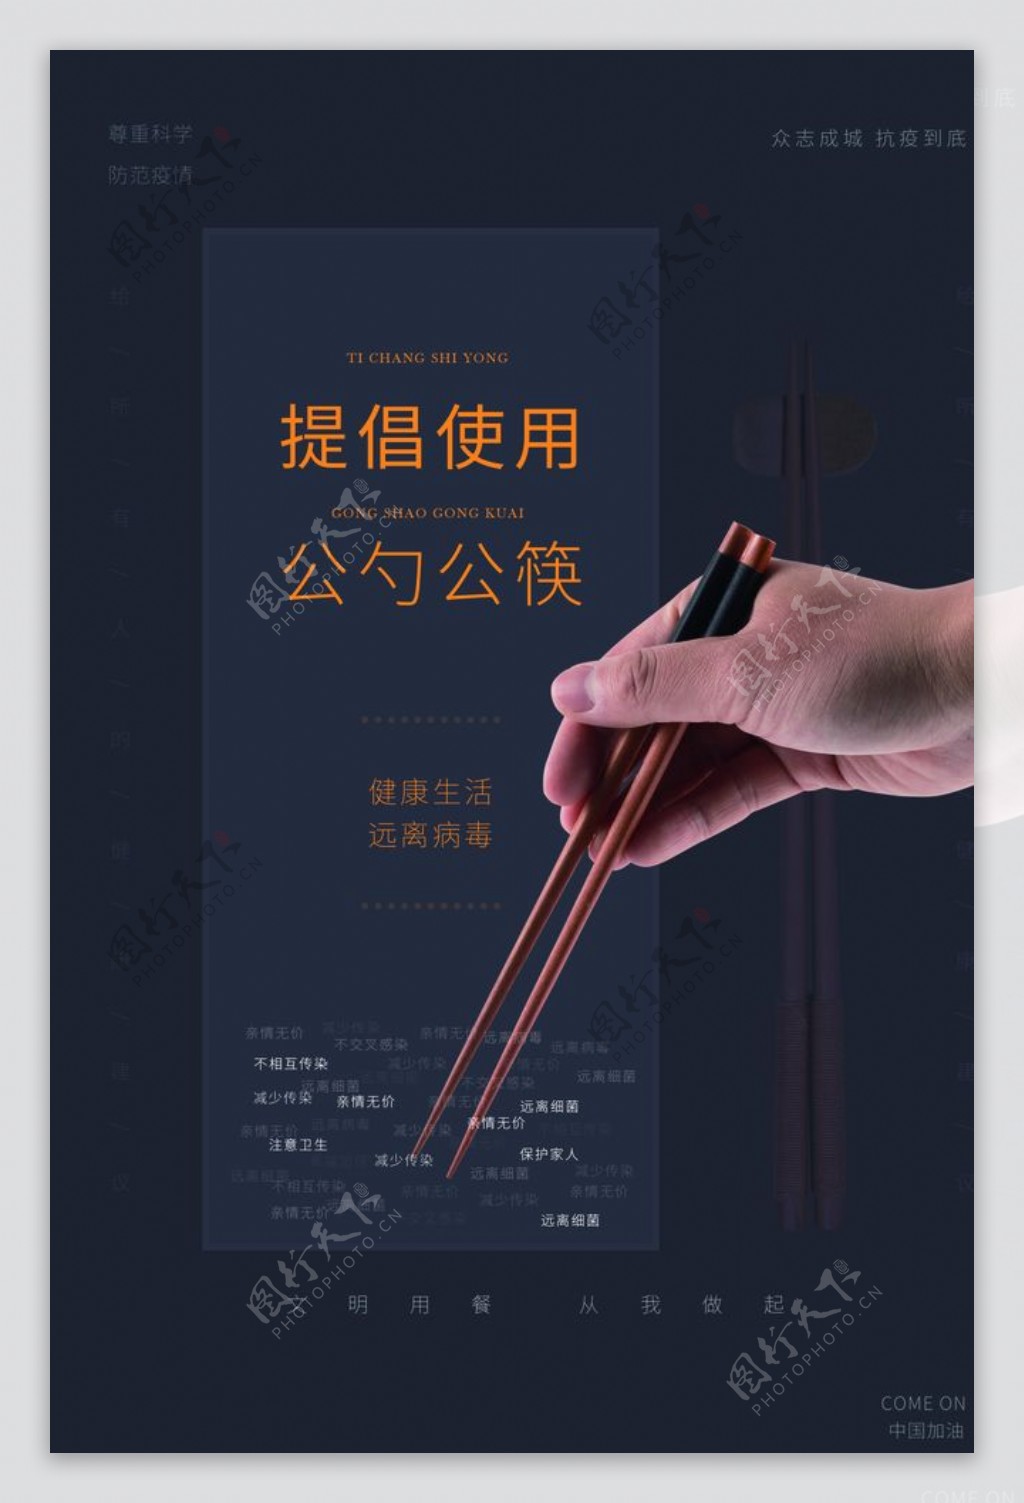 公勺公筷公益活动海报素材图片